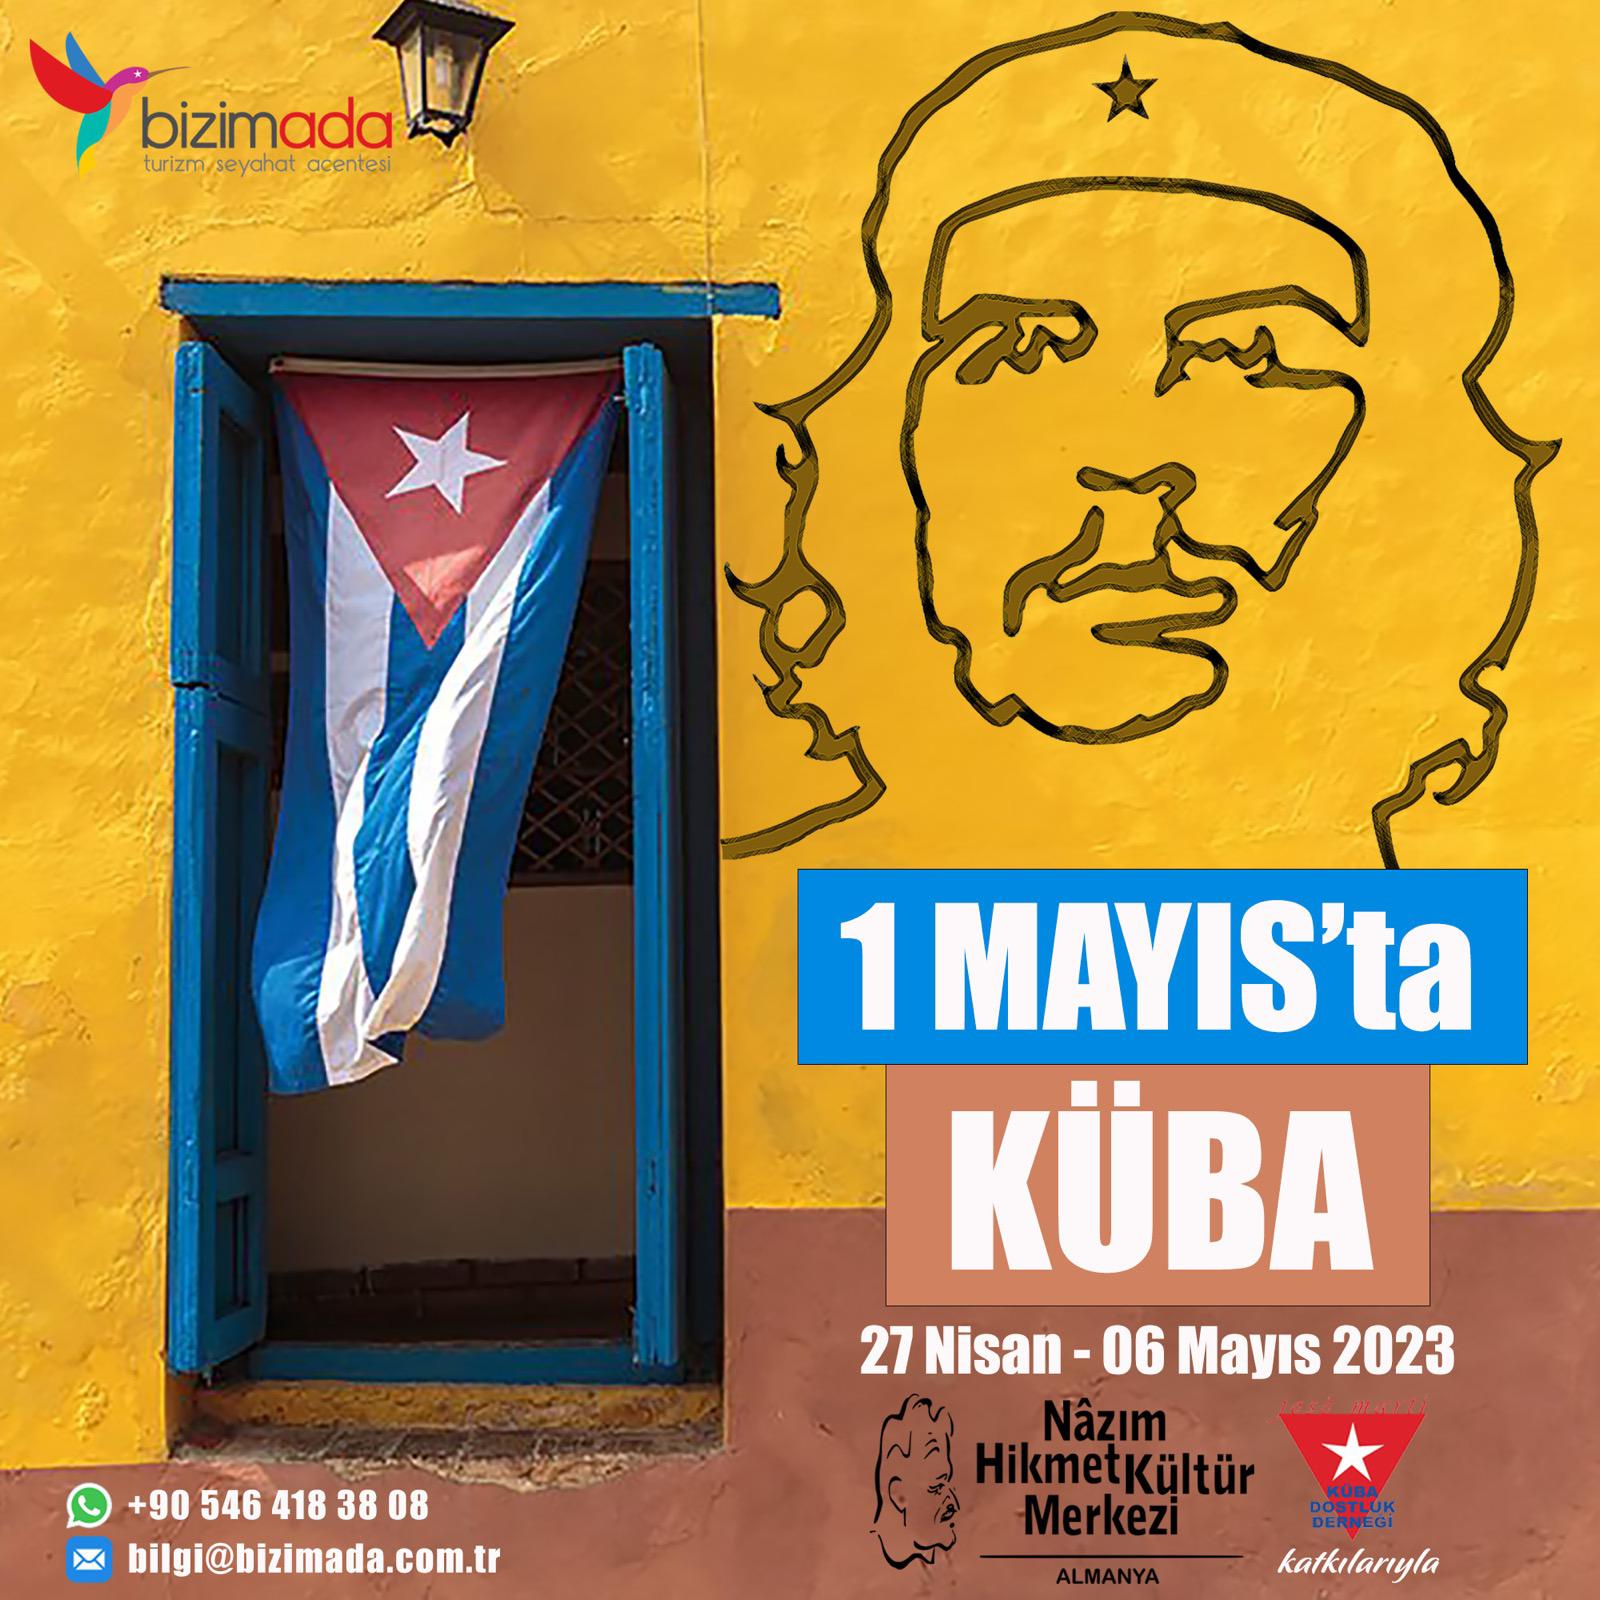 Erster-Mai-Reise nach Kuba - Nazim Hikmelt Kulturzentrum